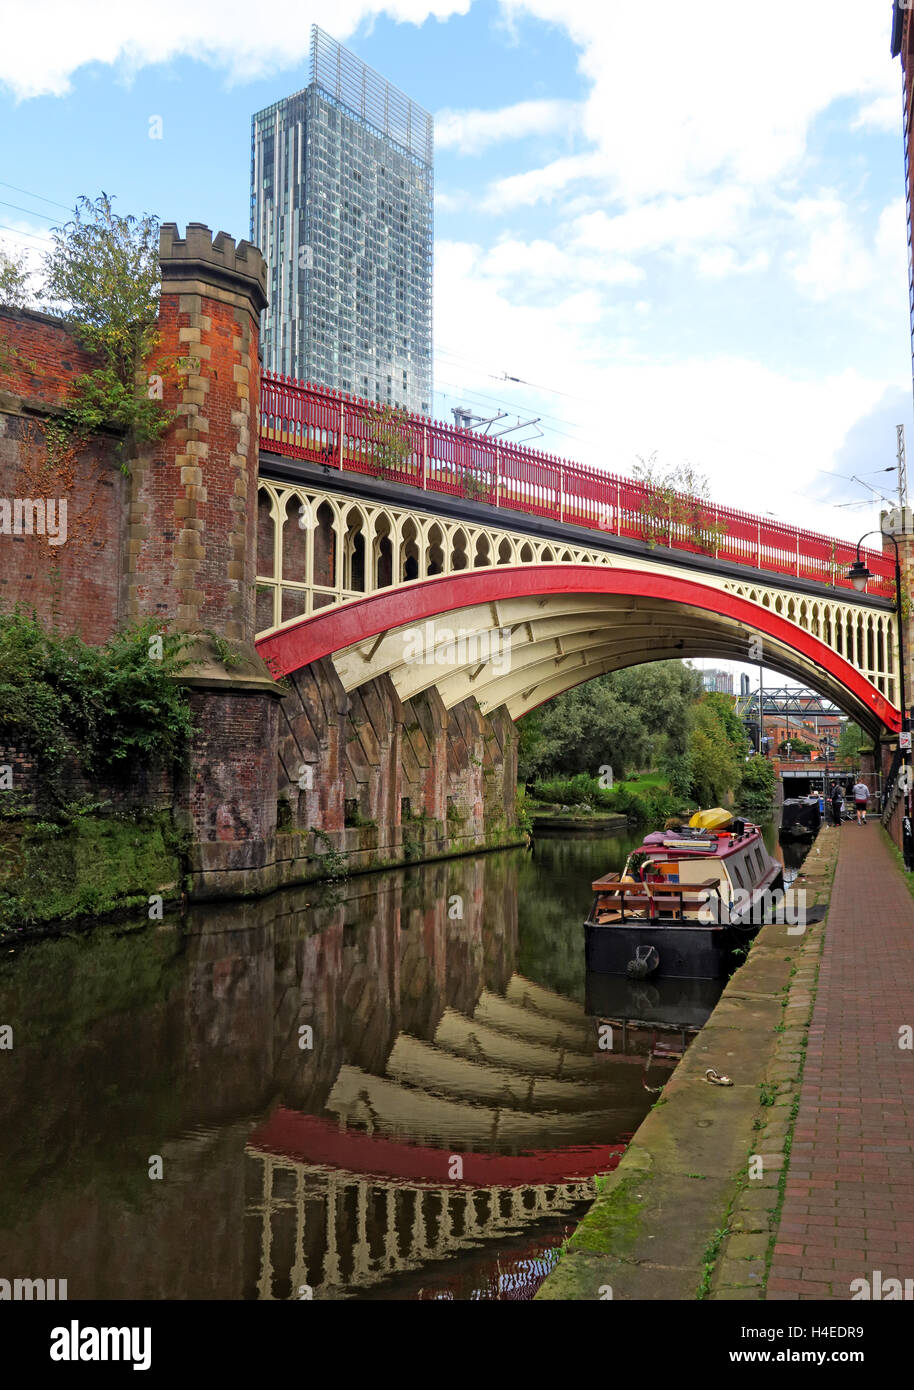 Rochdale Canal & Hotel Hilton, historischen Eisenbahnbrücke, Castlefields, Manchester, Lancs, North West England, Großbritannien Stockfoto